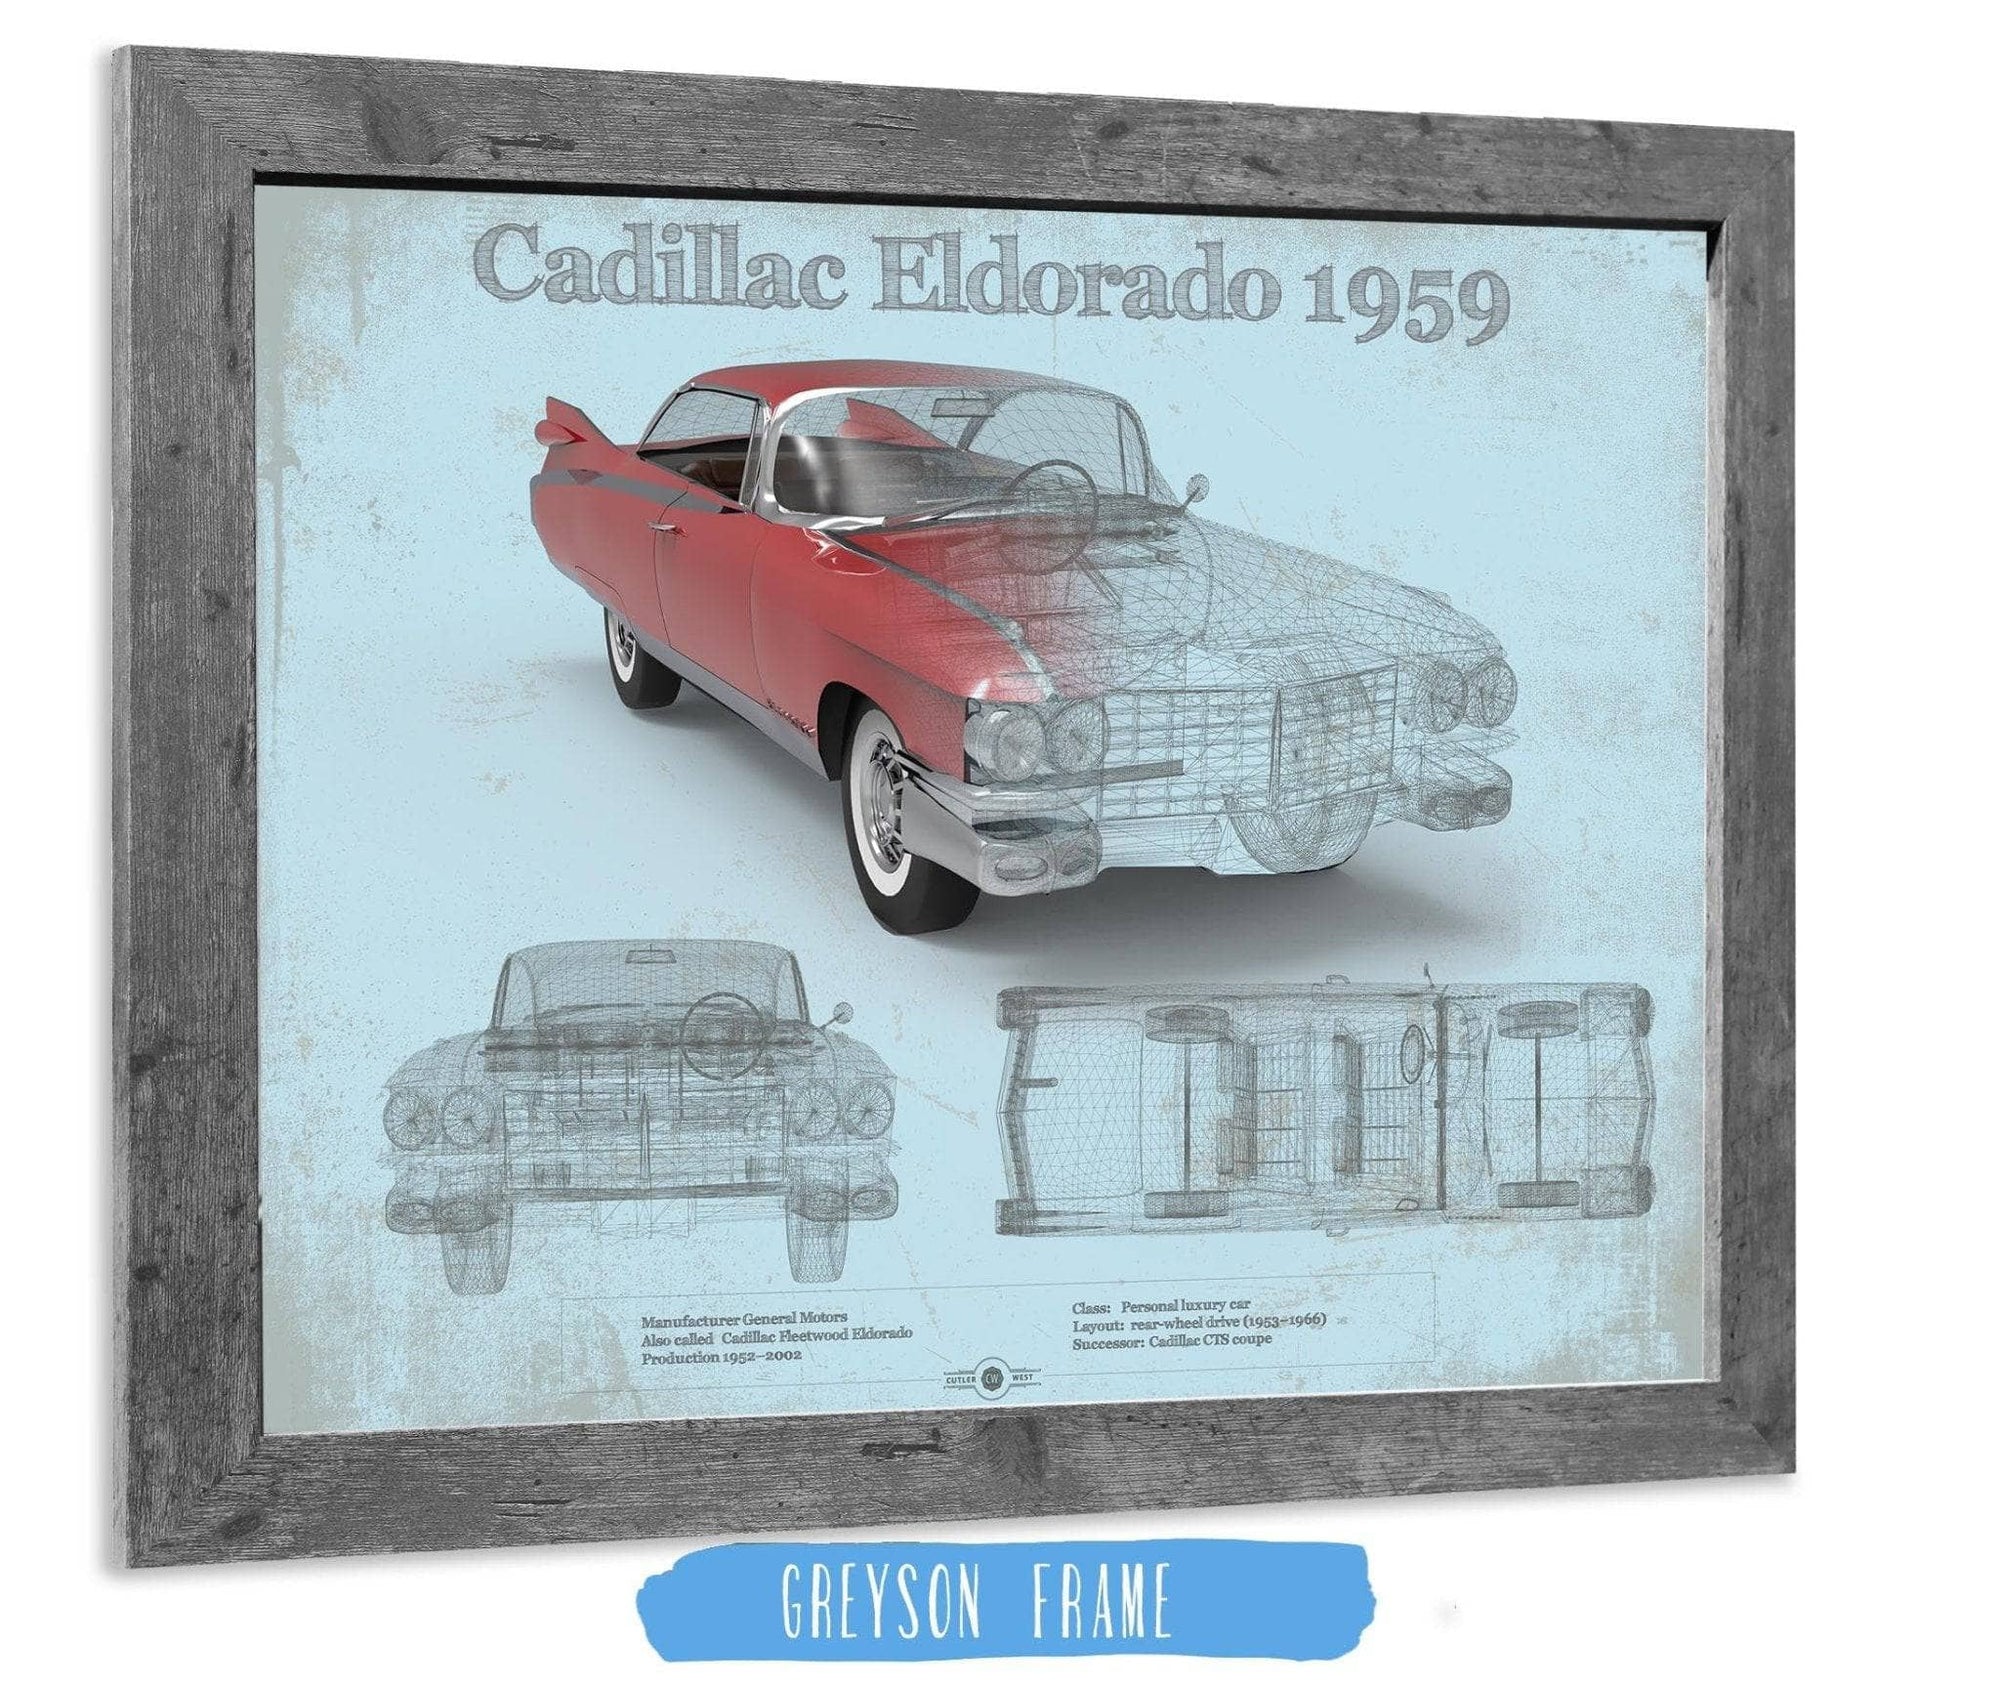 Cutler West Cadillac Collection Cadillac Eldorado Hardtop 1959 Cadillac Vintage Car Print